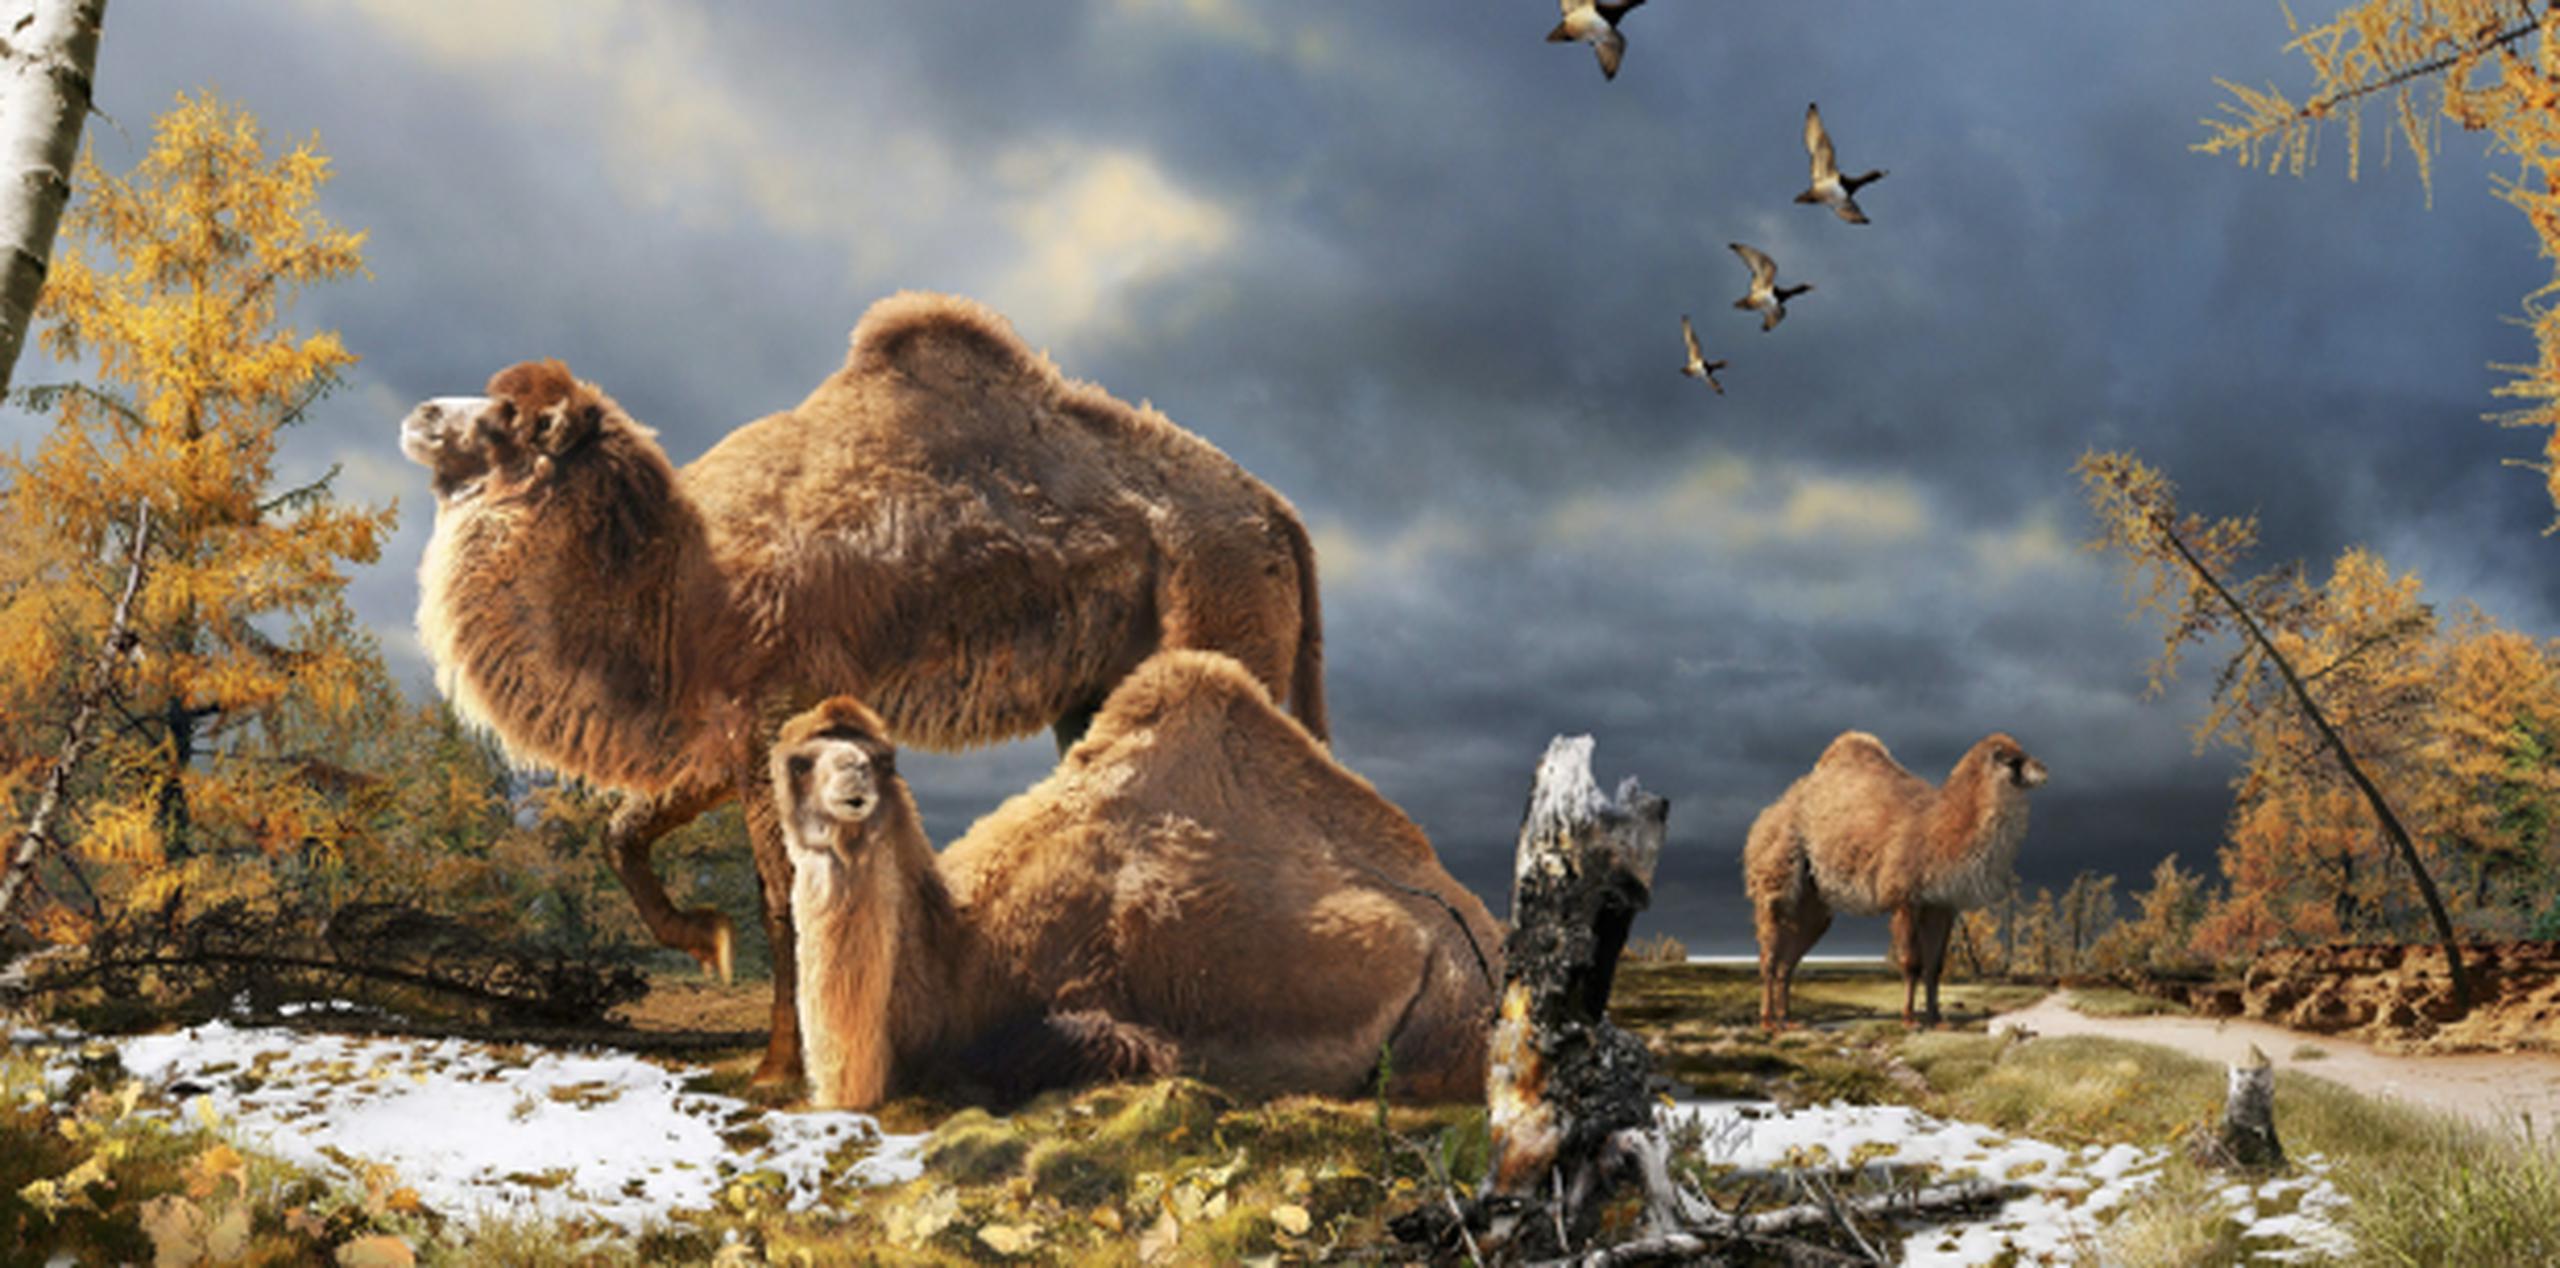 Ilustración del camello gigante que vivió hace 3.5 millones de años en el extremo norte ártico canadiense. (EFE/Julius Csotonyi)